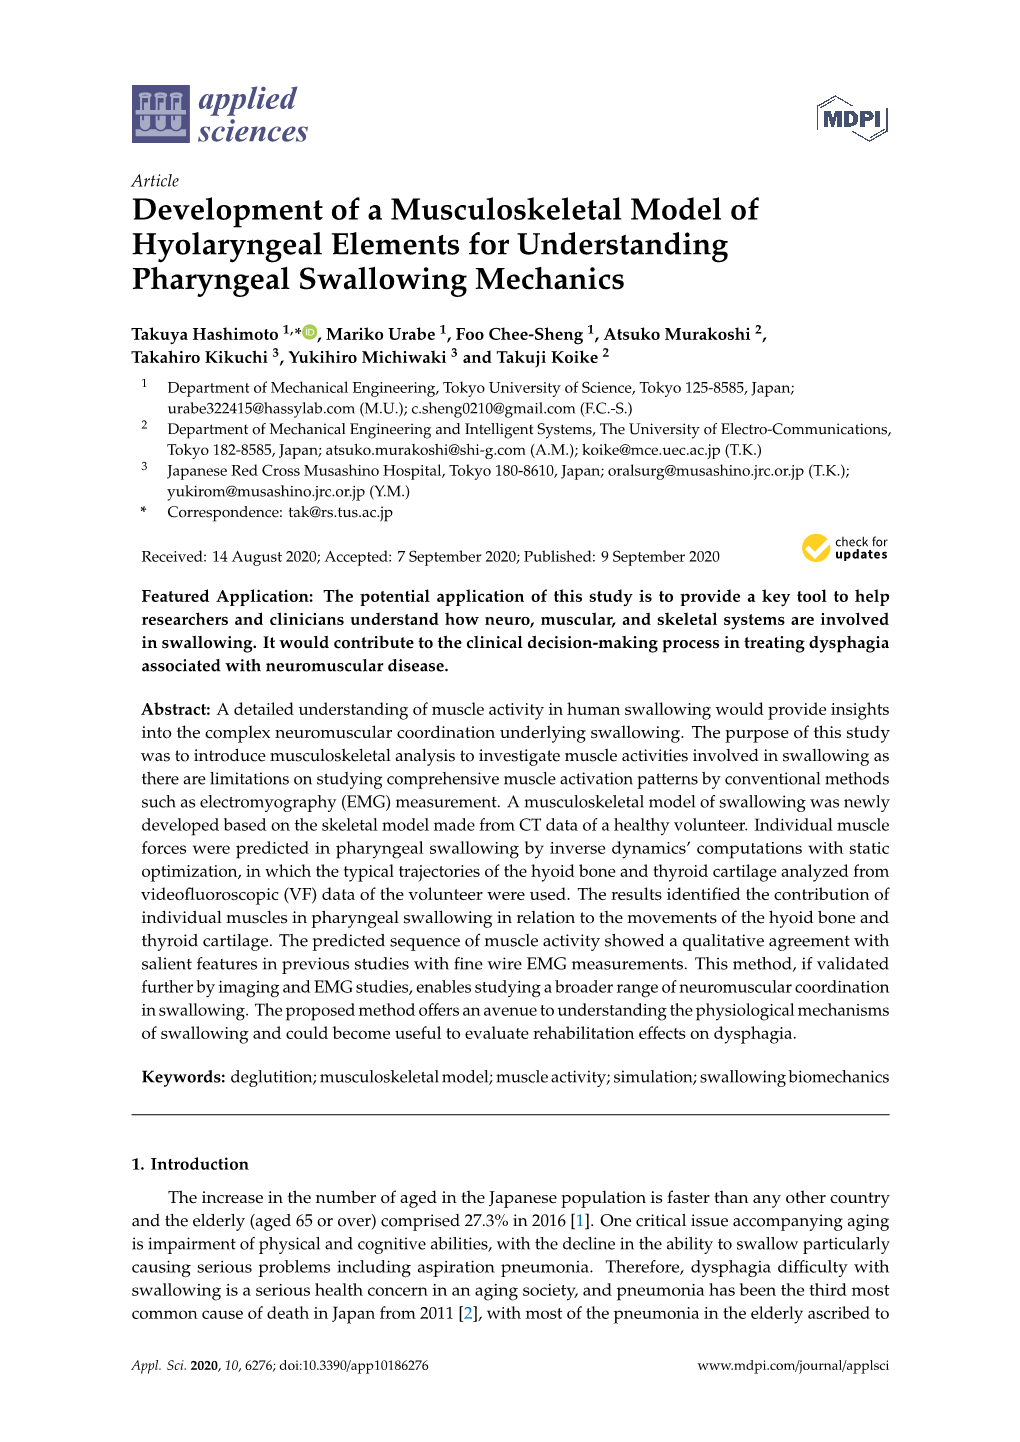 Development of a Musculoskeletal Model of Hyolaryngeal Elements for Understanding Pharyngeal Swallowing Mechanics